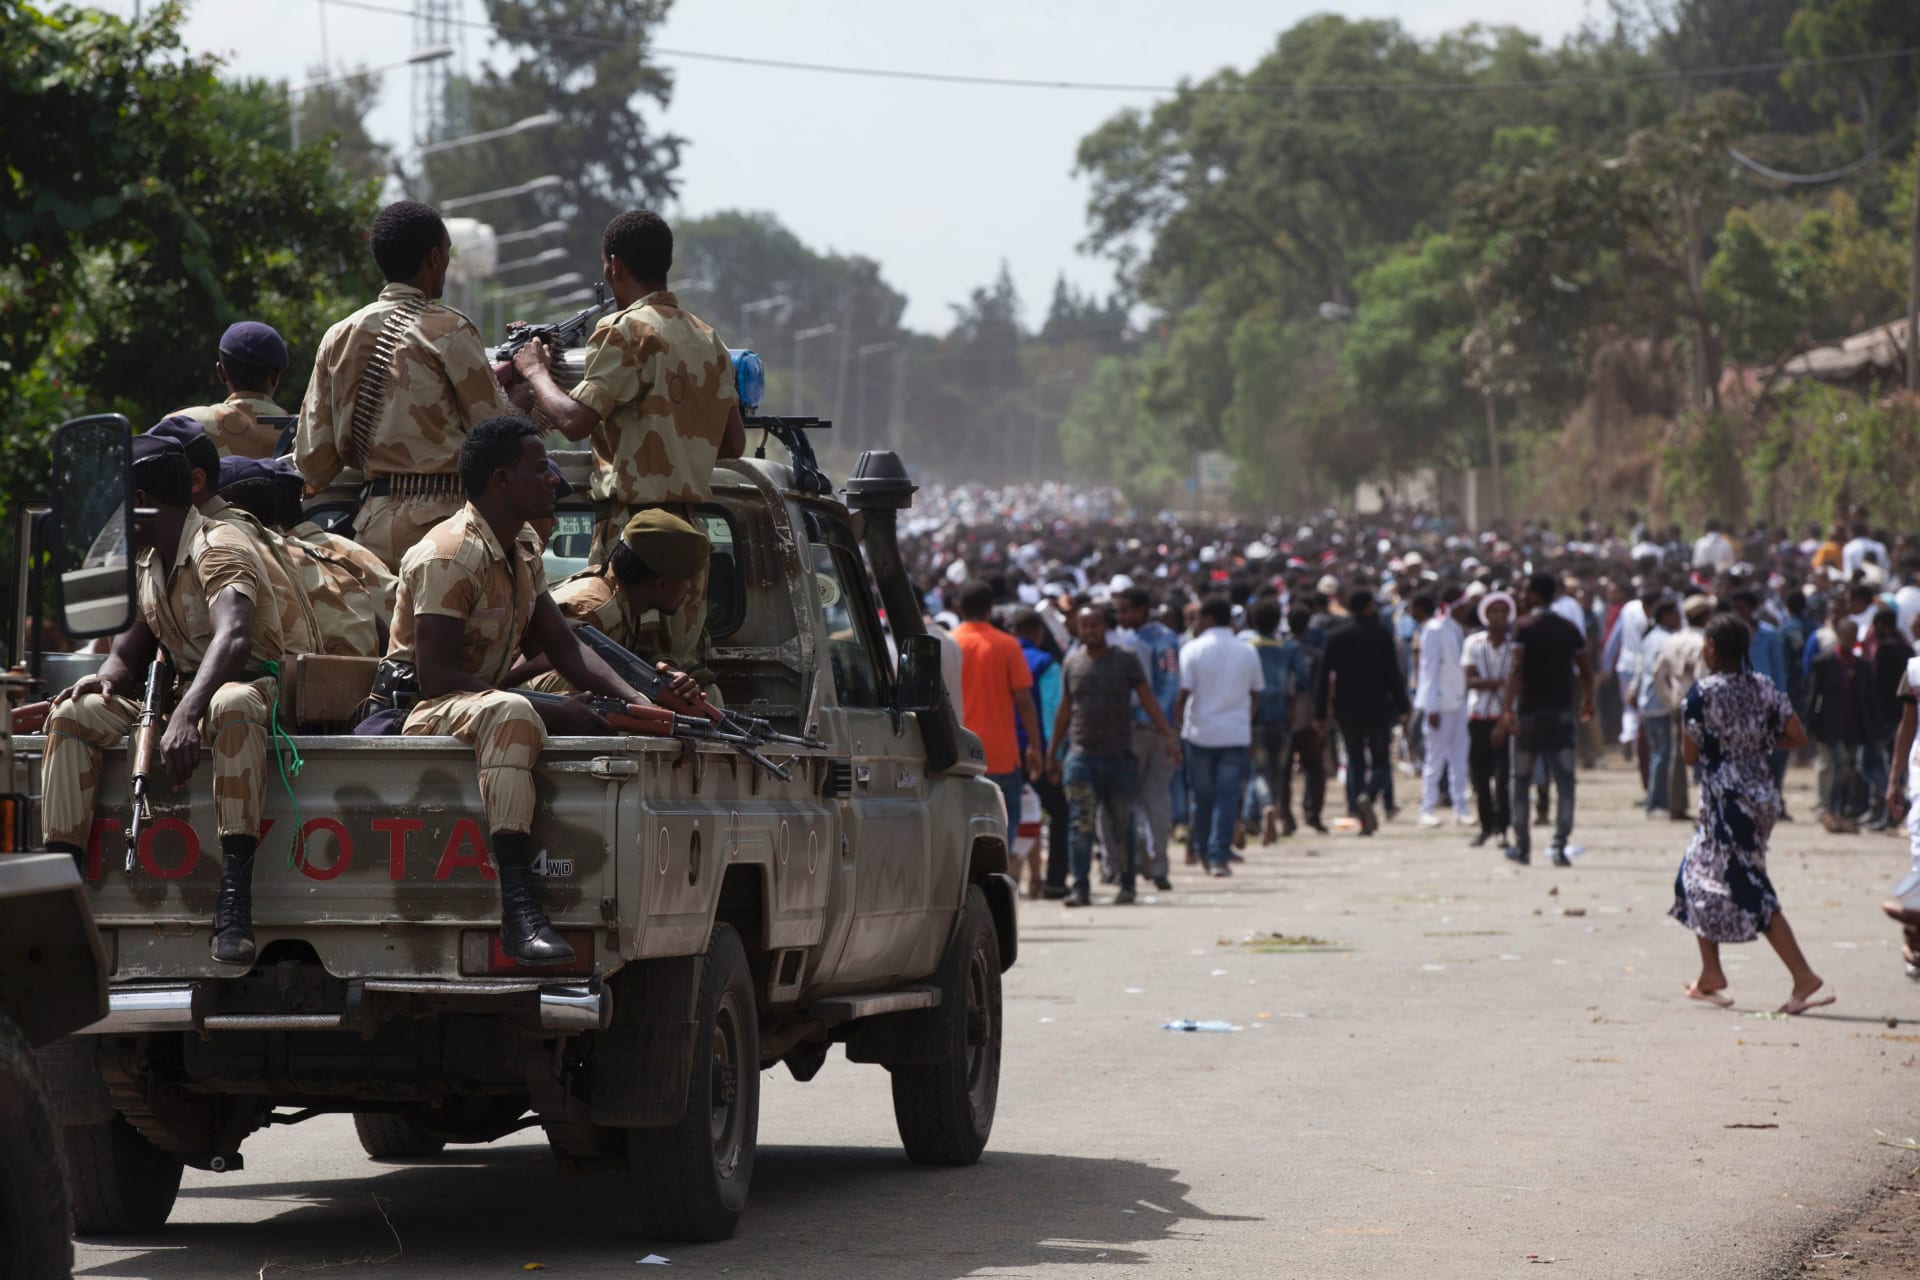 أثيوبيا تتهم "عناصر مصرية" بتسليح "عصابات " على أراضيها